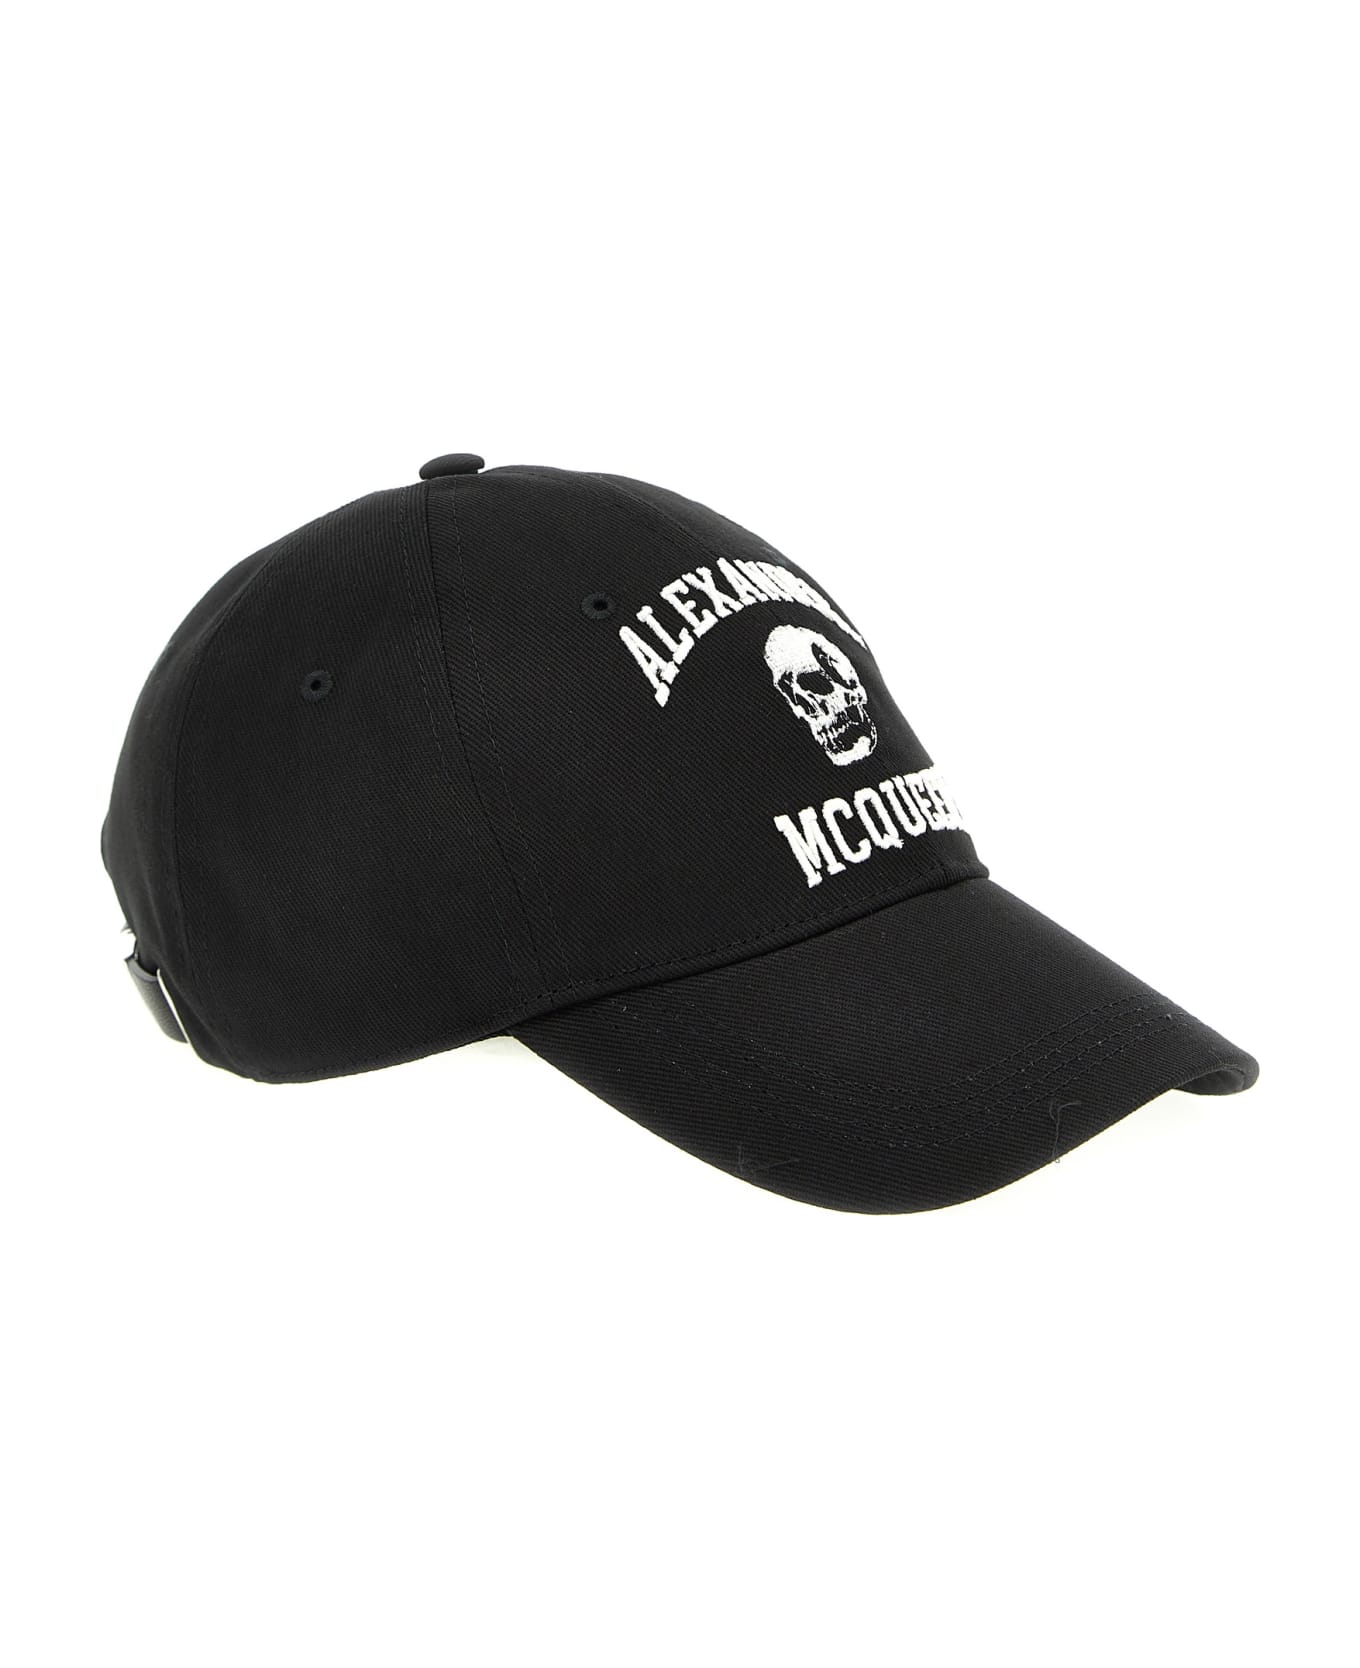 Alexander McQueen Skull Logo Baseball Cap - Black Ivory